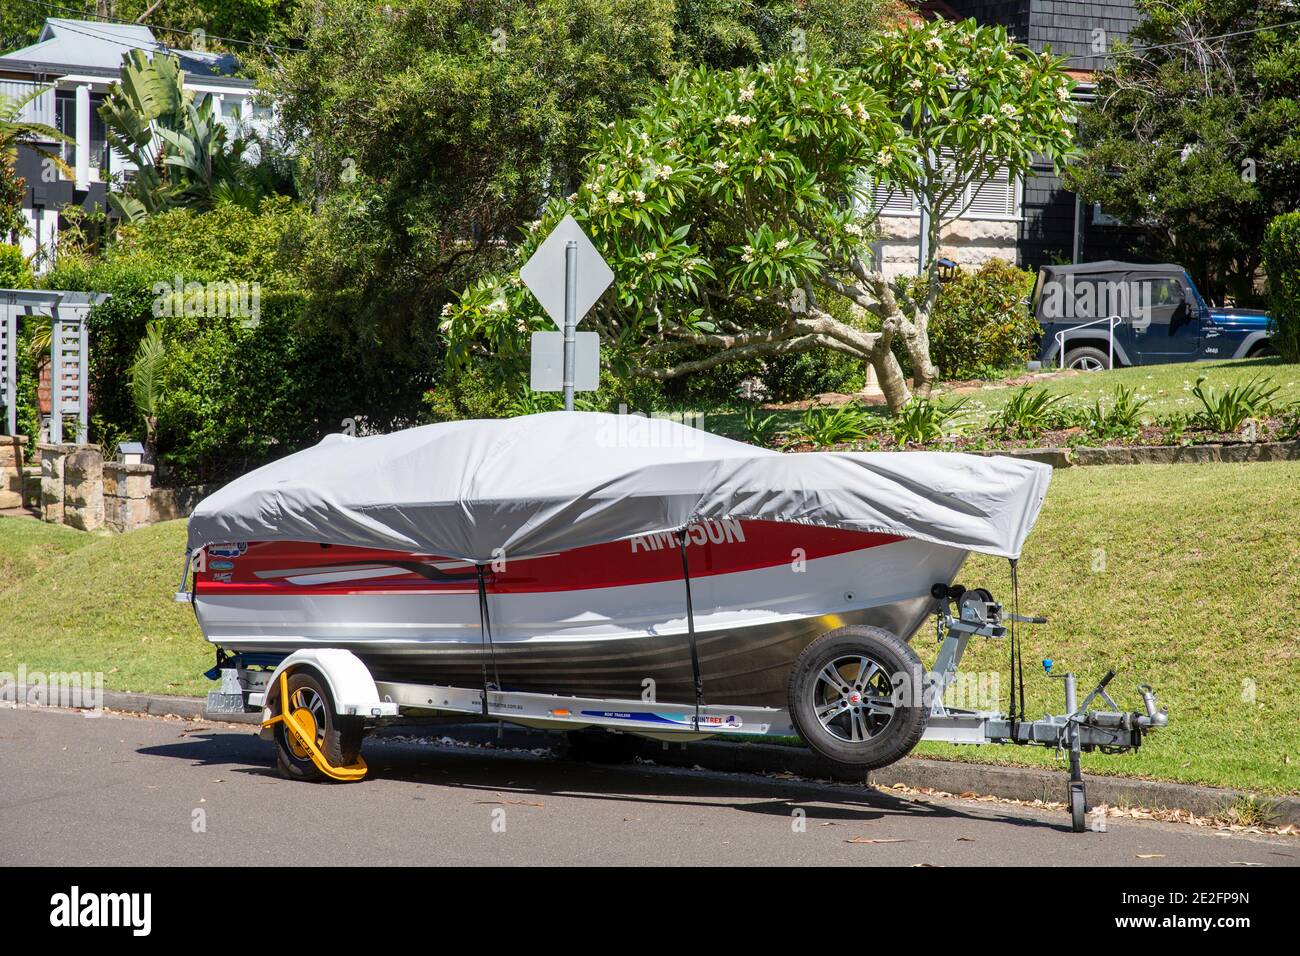 Boot auf einem Anhänger in einer Sydney Straße hat ein Schutzabdeckung, um es sauber zu halten, und ein gelbes Rad Schloss für Sicherheit, Sydney, Australien Stockfoto